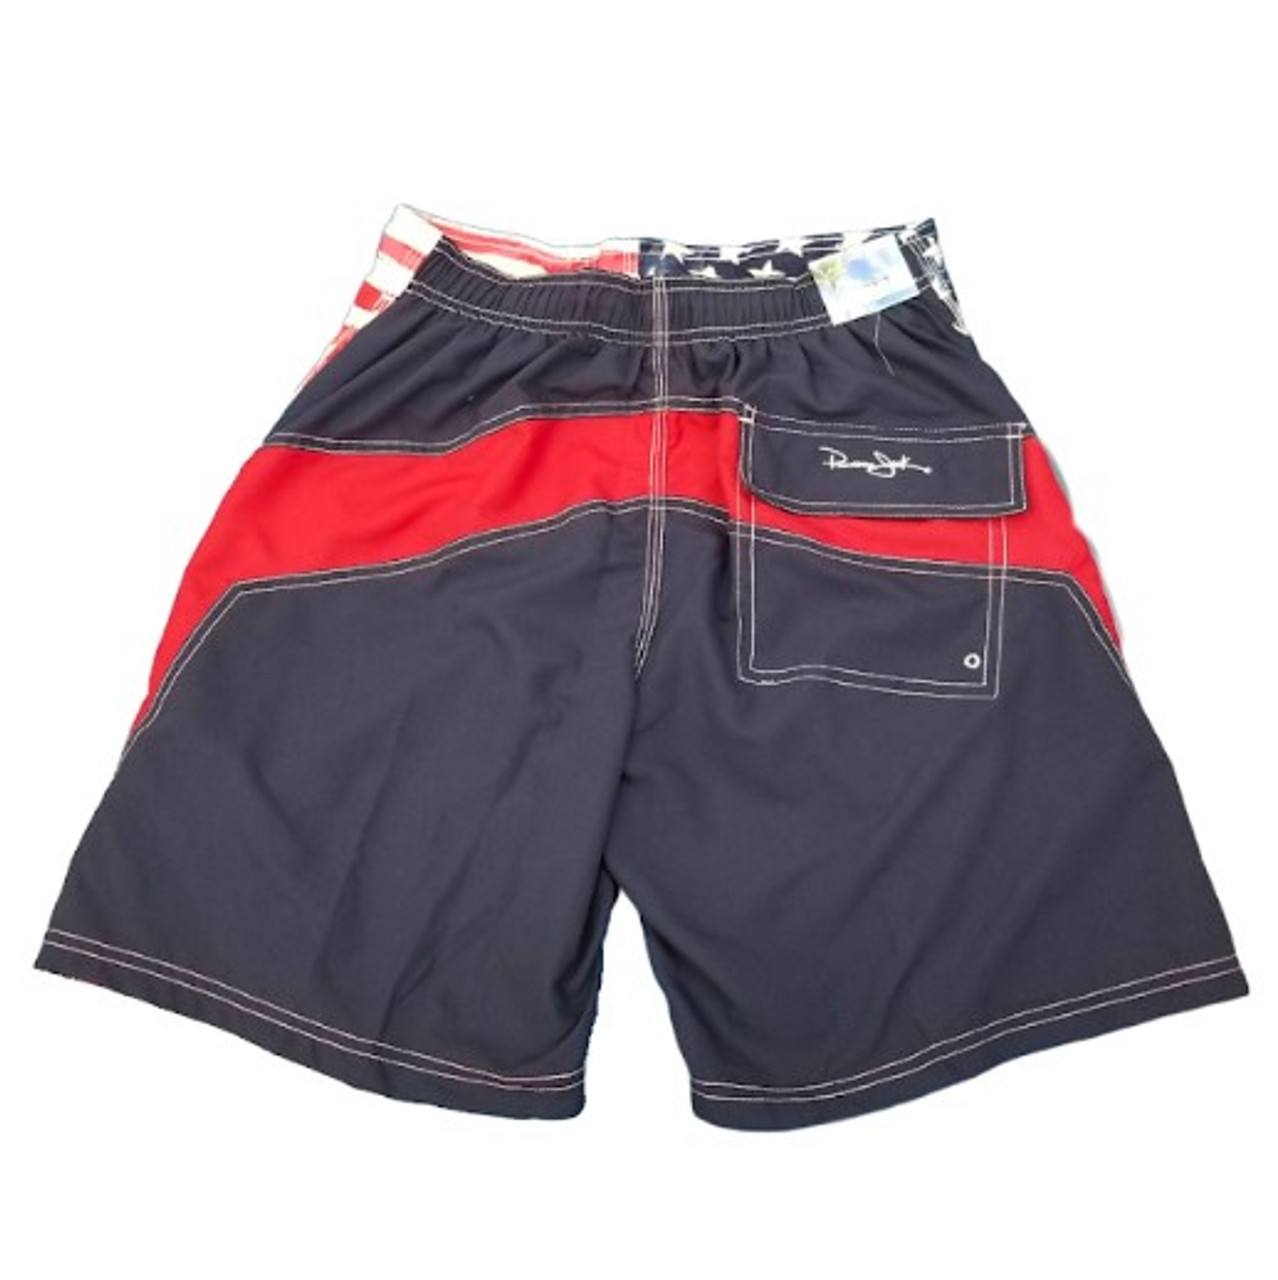 Panama Jack 20in Mens Microfiber Board Shorts - Stripe